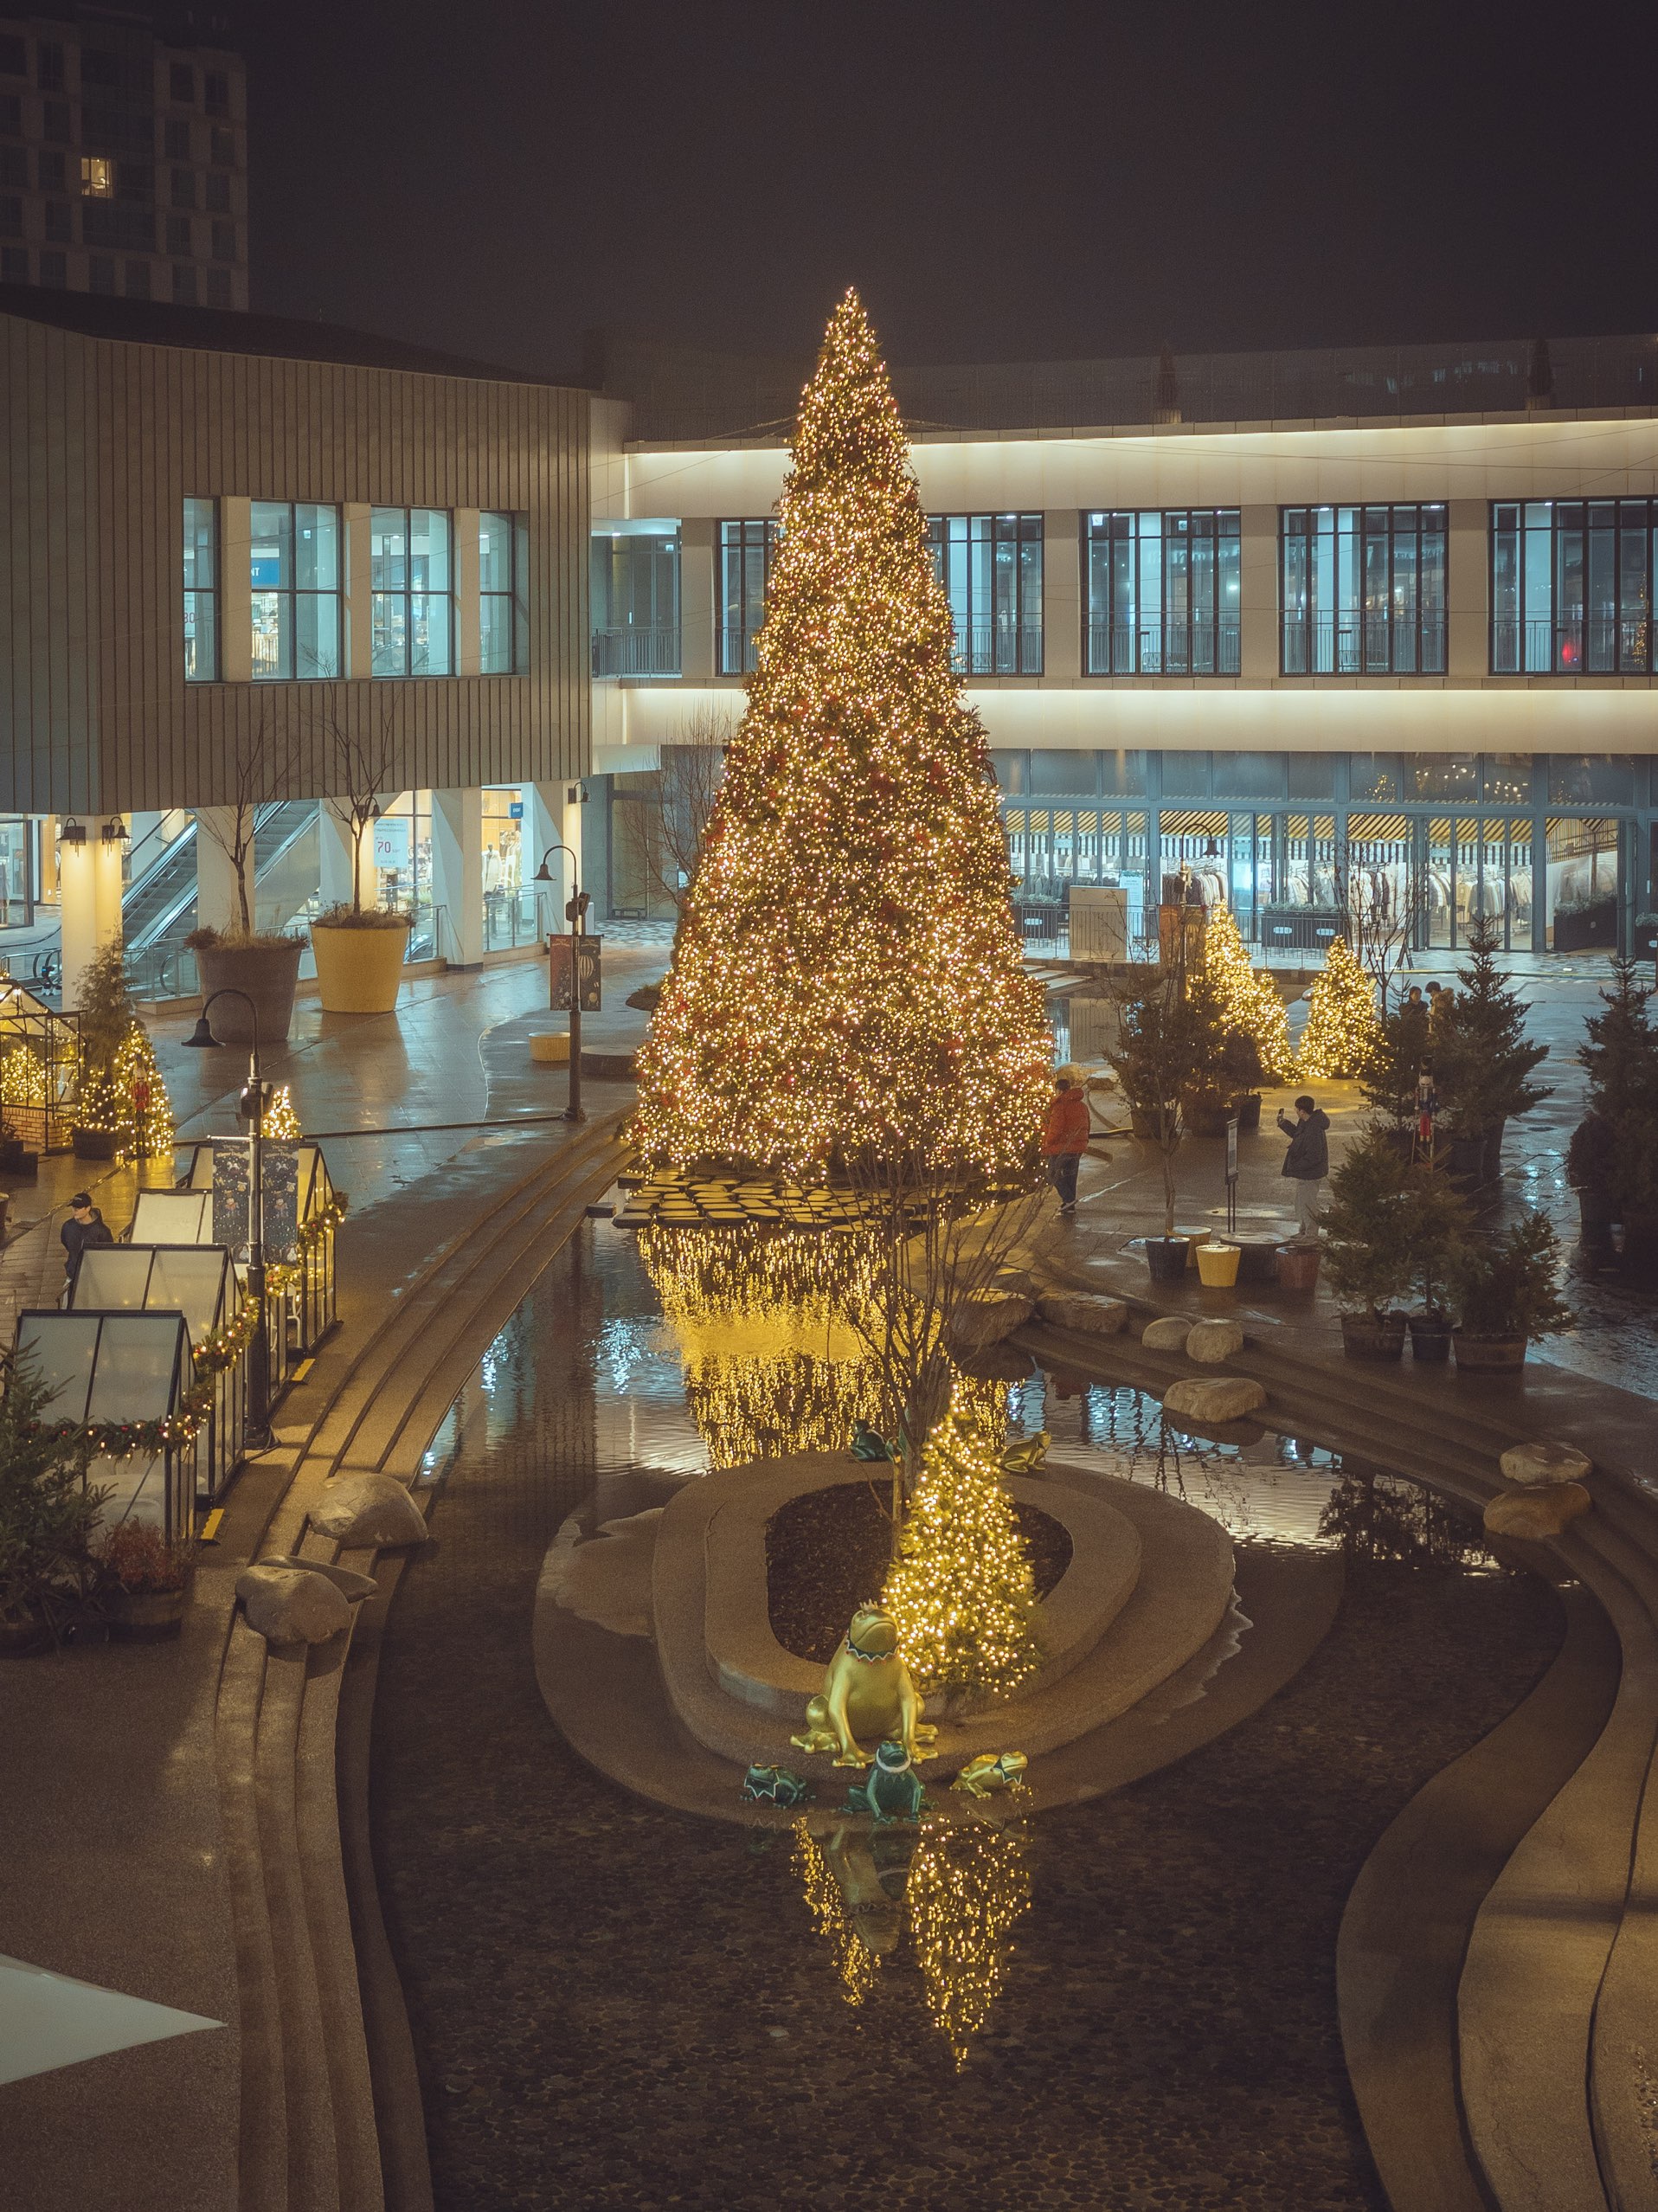 可以看到大型圣诞树反映的“金浦现代高级奥特莱斯”